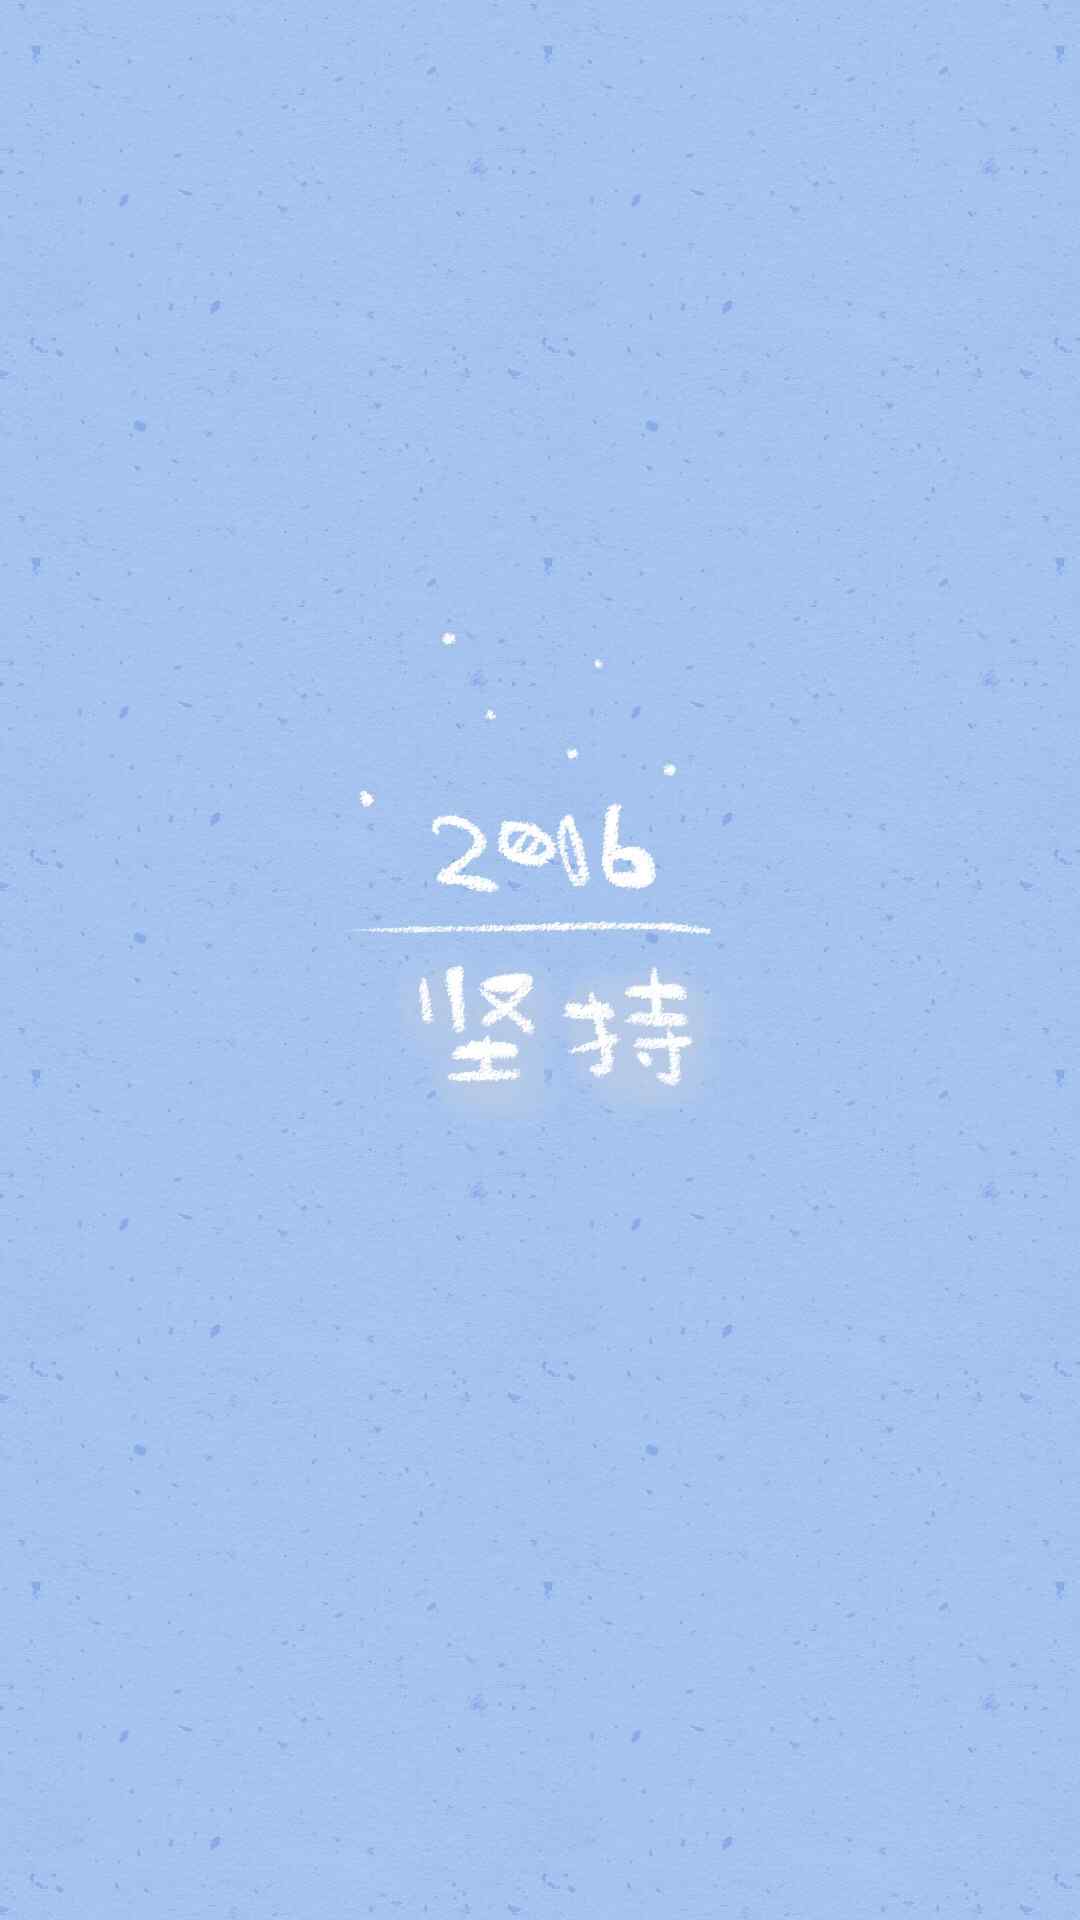 2016新年祝福简约文字高清手机壁纸